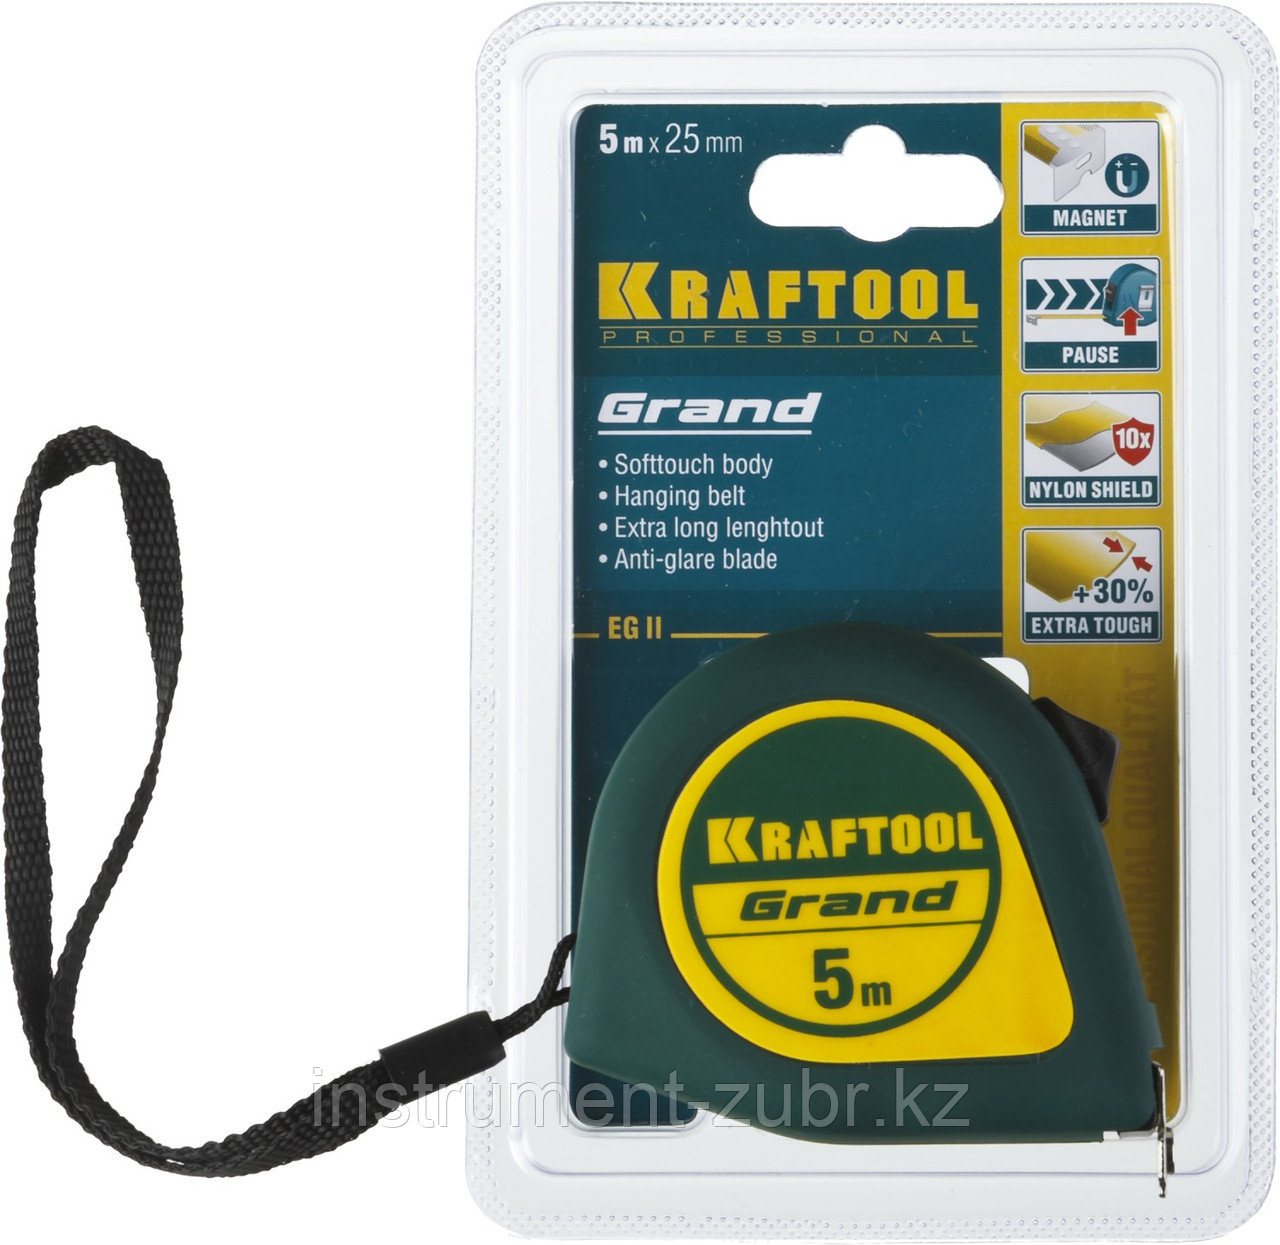 Рулетка KRAFTOOL GRAND, обрезиненный пластиковый корпус, 5м/25мм